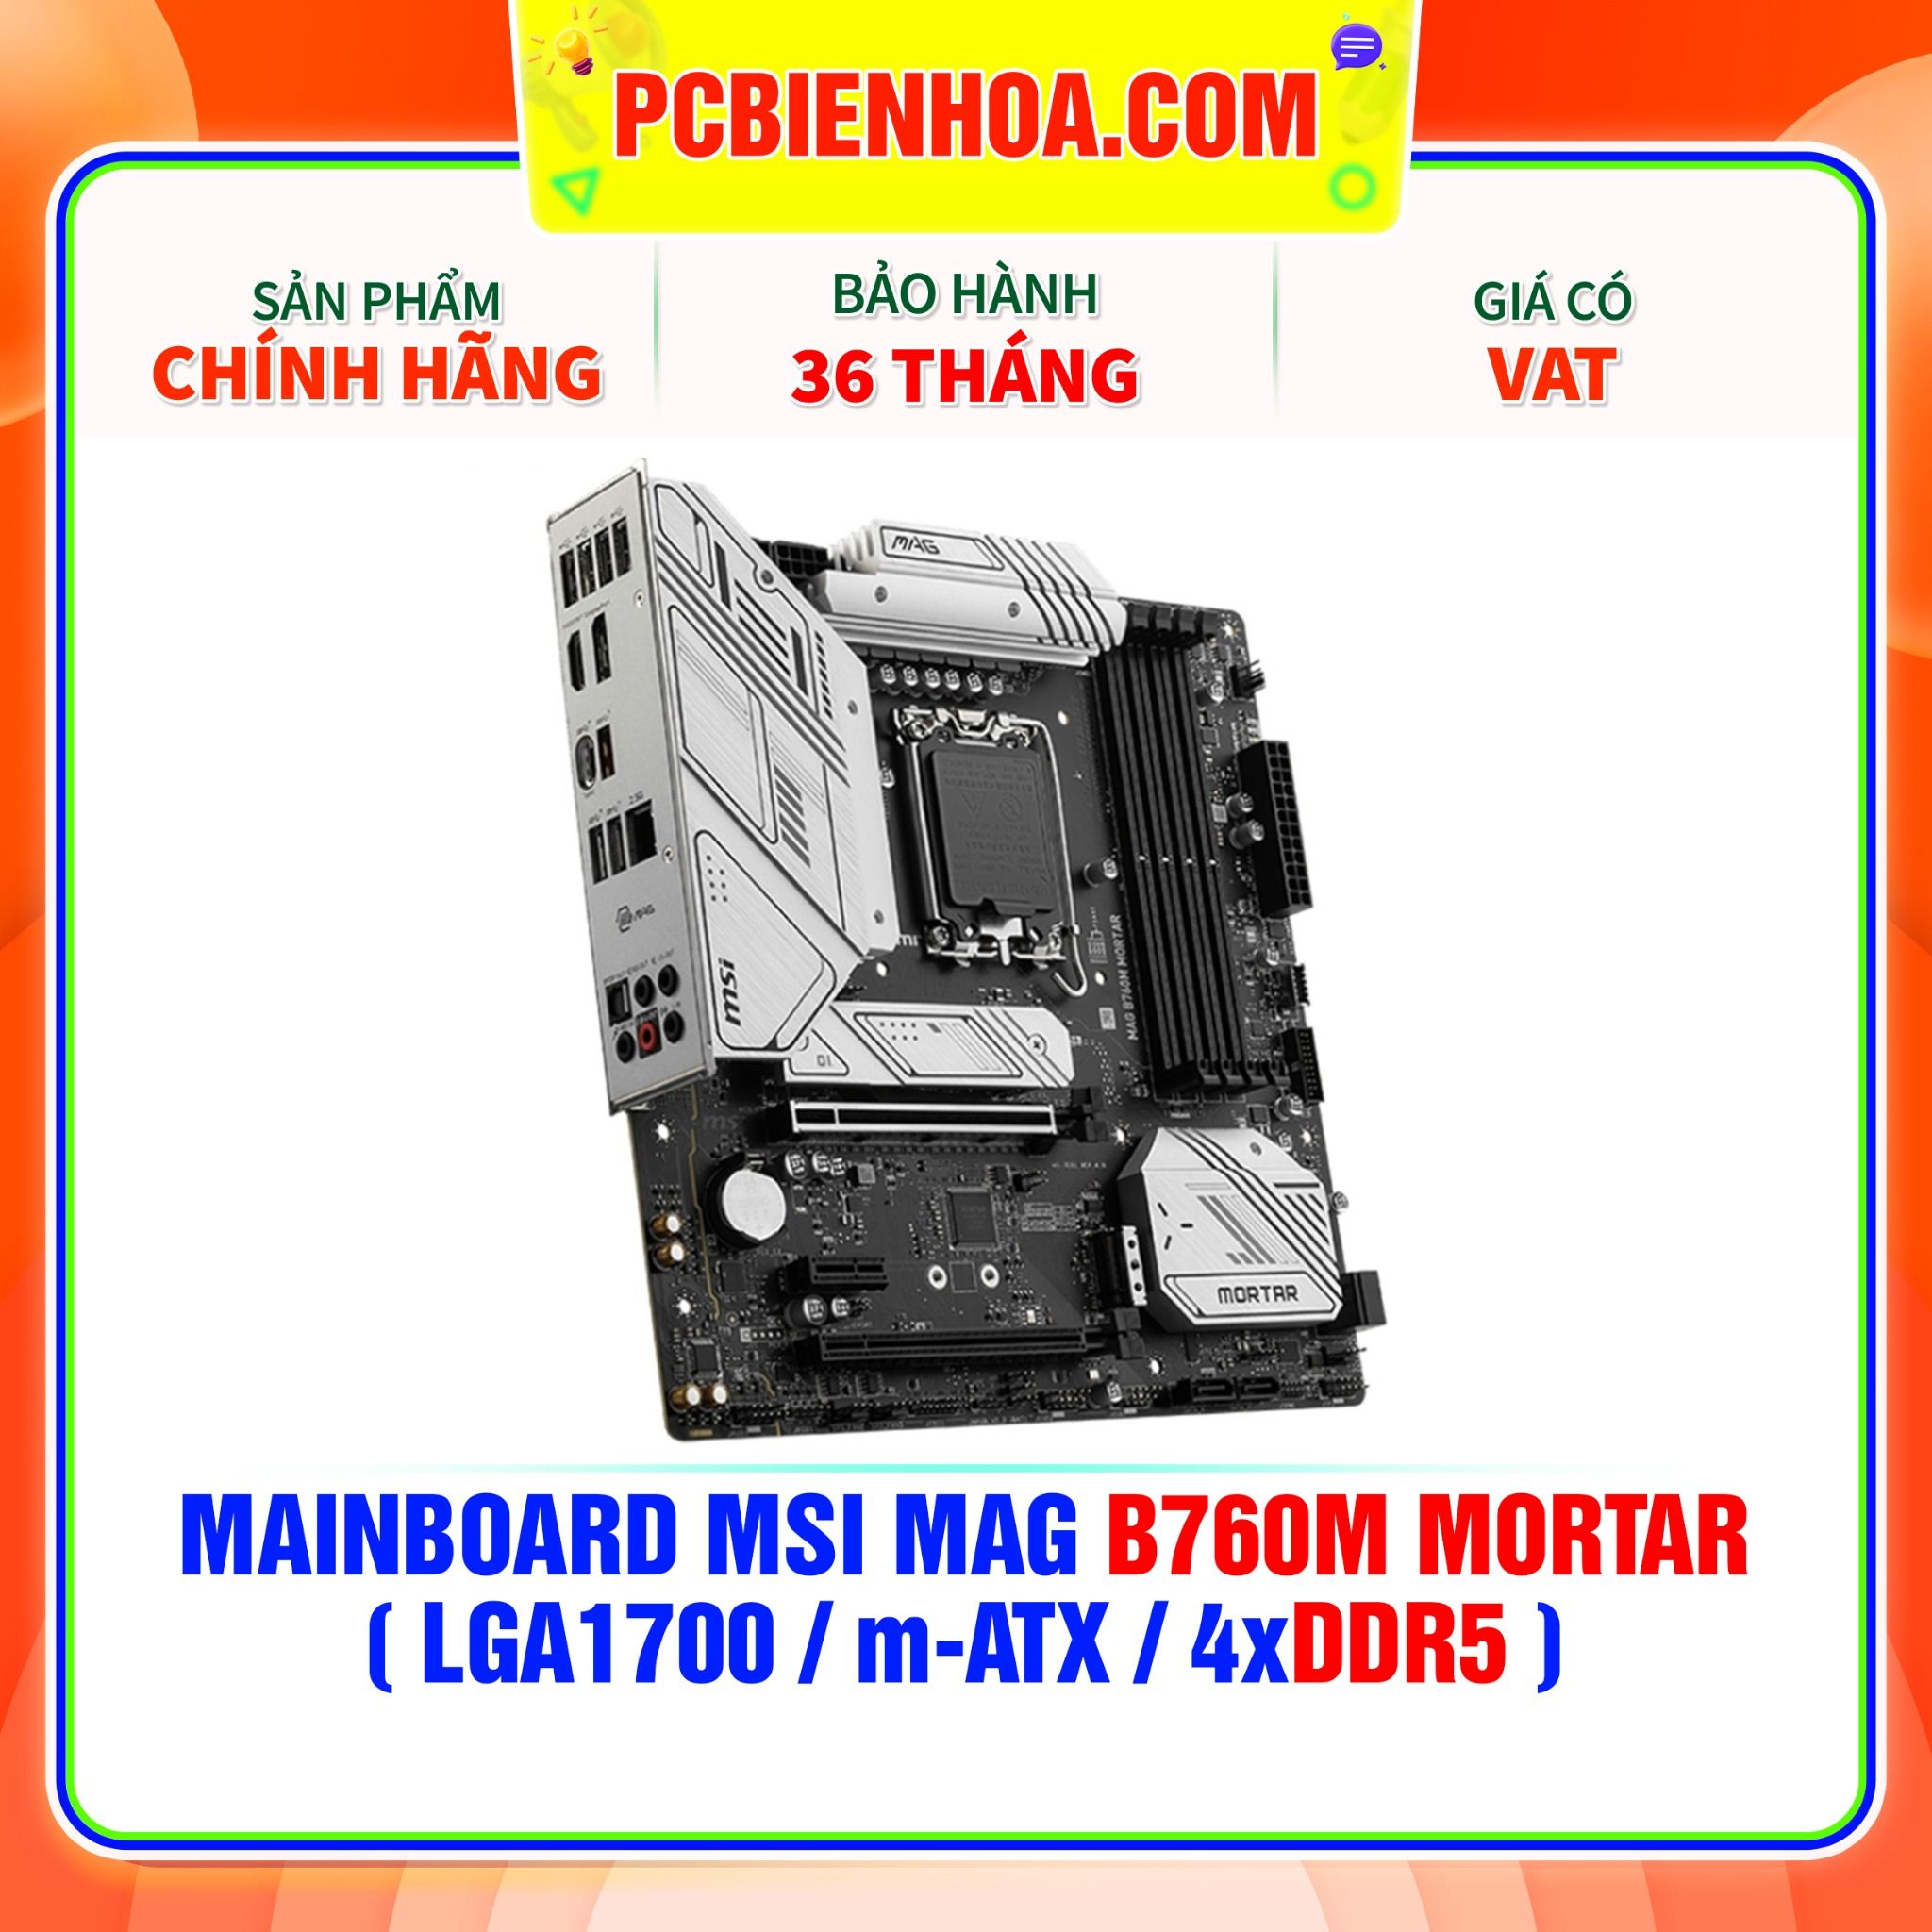  DDR5 - MAINBOARD MSI MAG B760M MORTAR ( LGA1700 / m-ATX / 4xDDR5 ) 